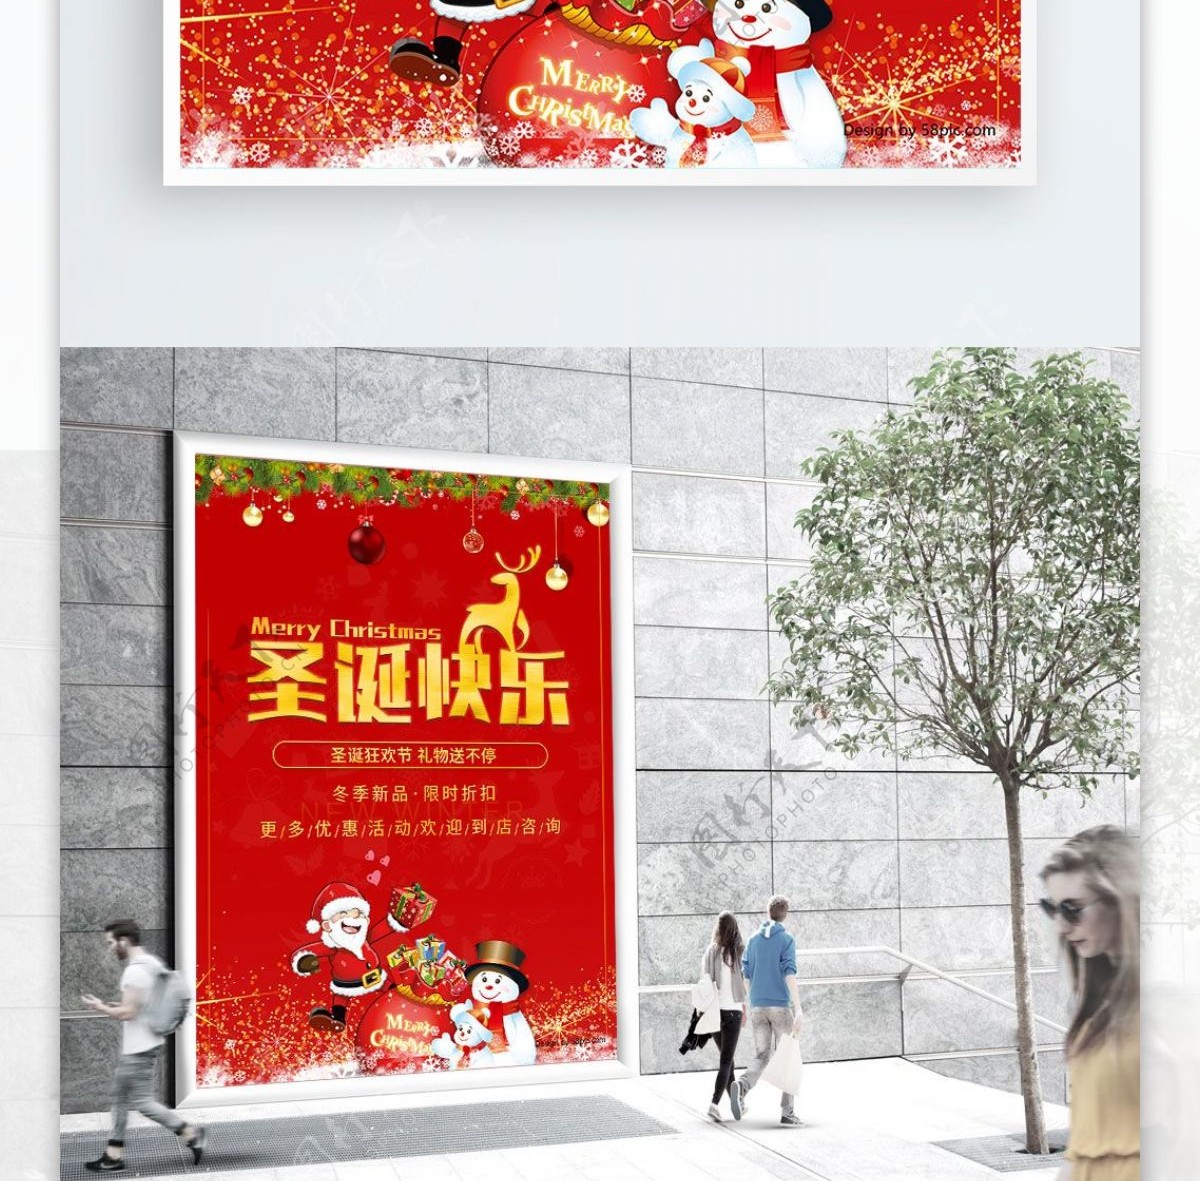 圣诞狂欢节促销送礼活动海报